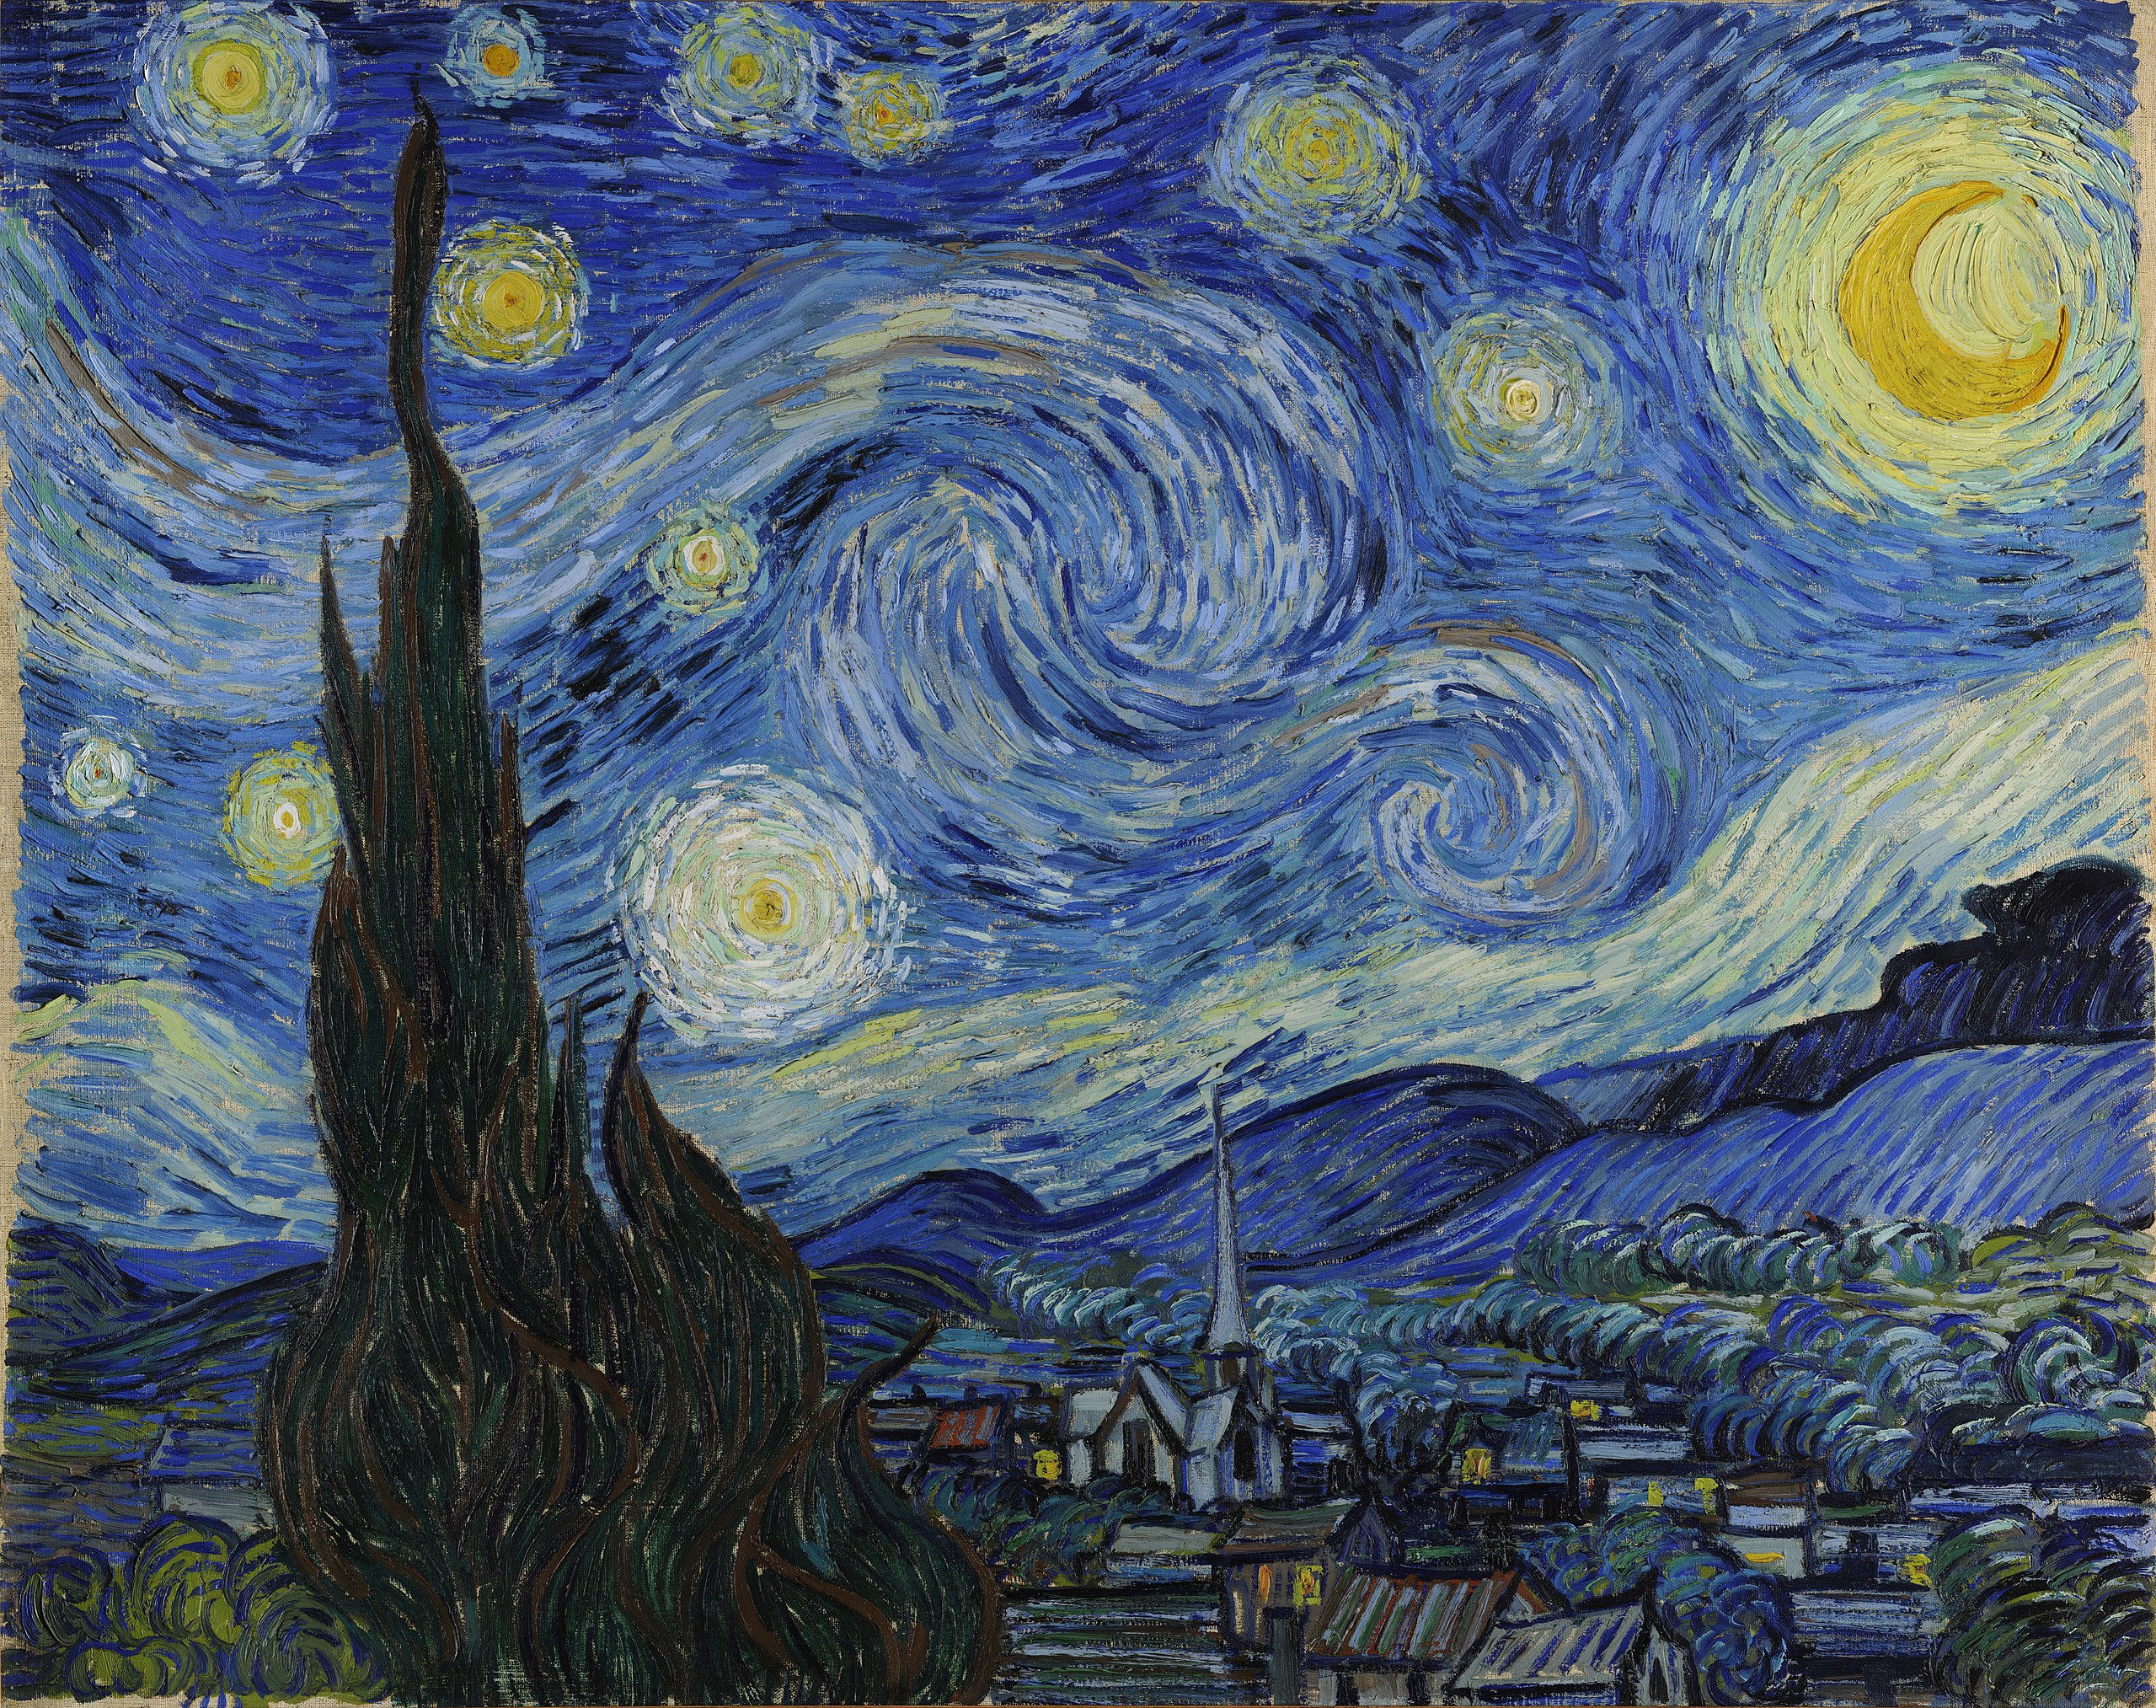 Noapte înstelată by Vincent van Gogh - 1889 - 73.7 × 92.1 cm 